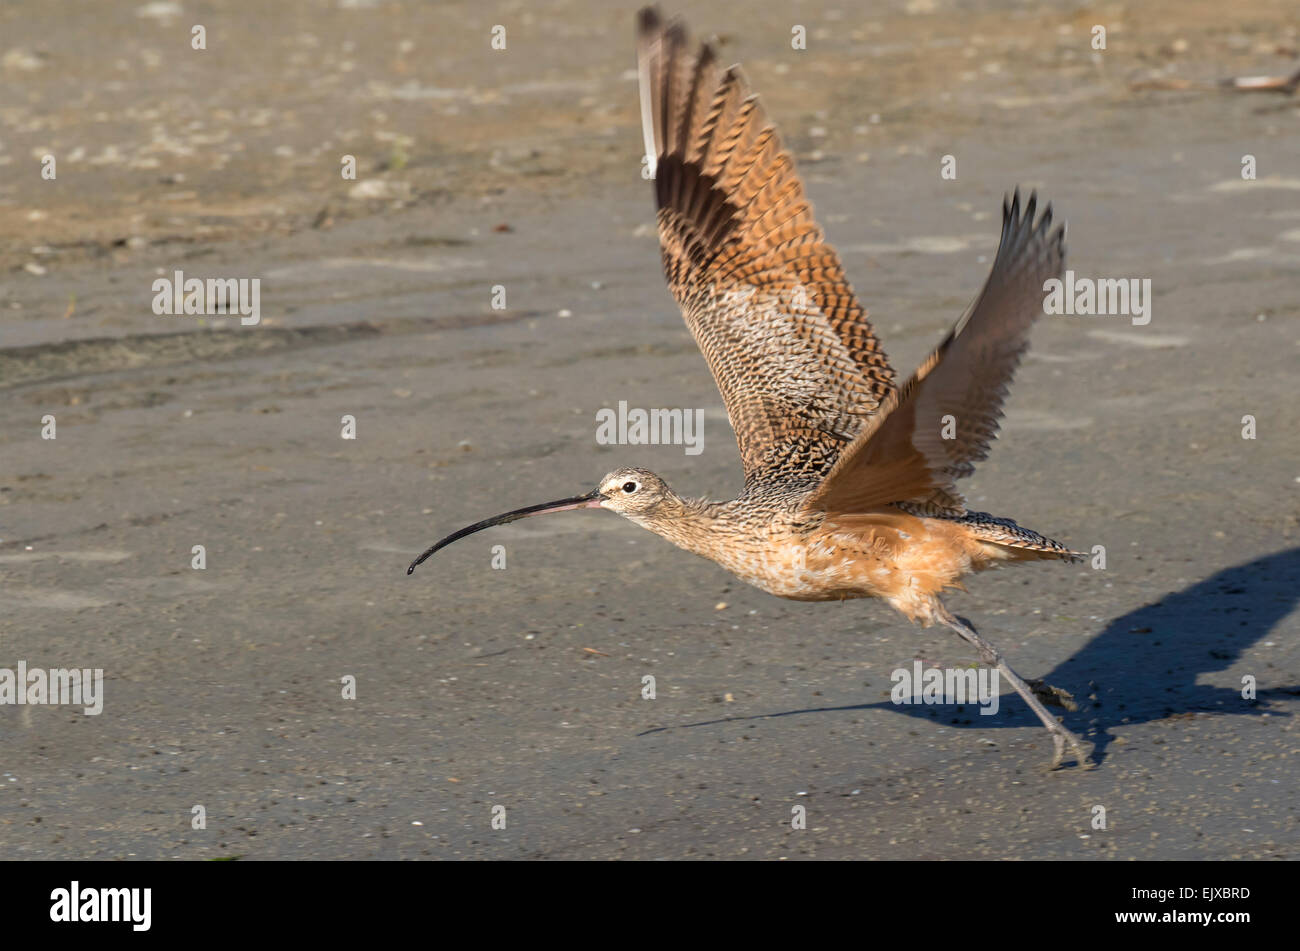 Long-billed curlew (Numenius americanus) taking off, Galveston, Texas, USA. Stock Photo